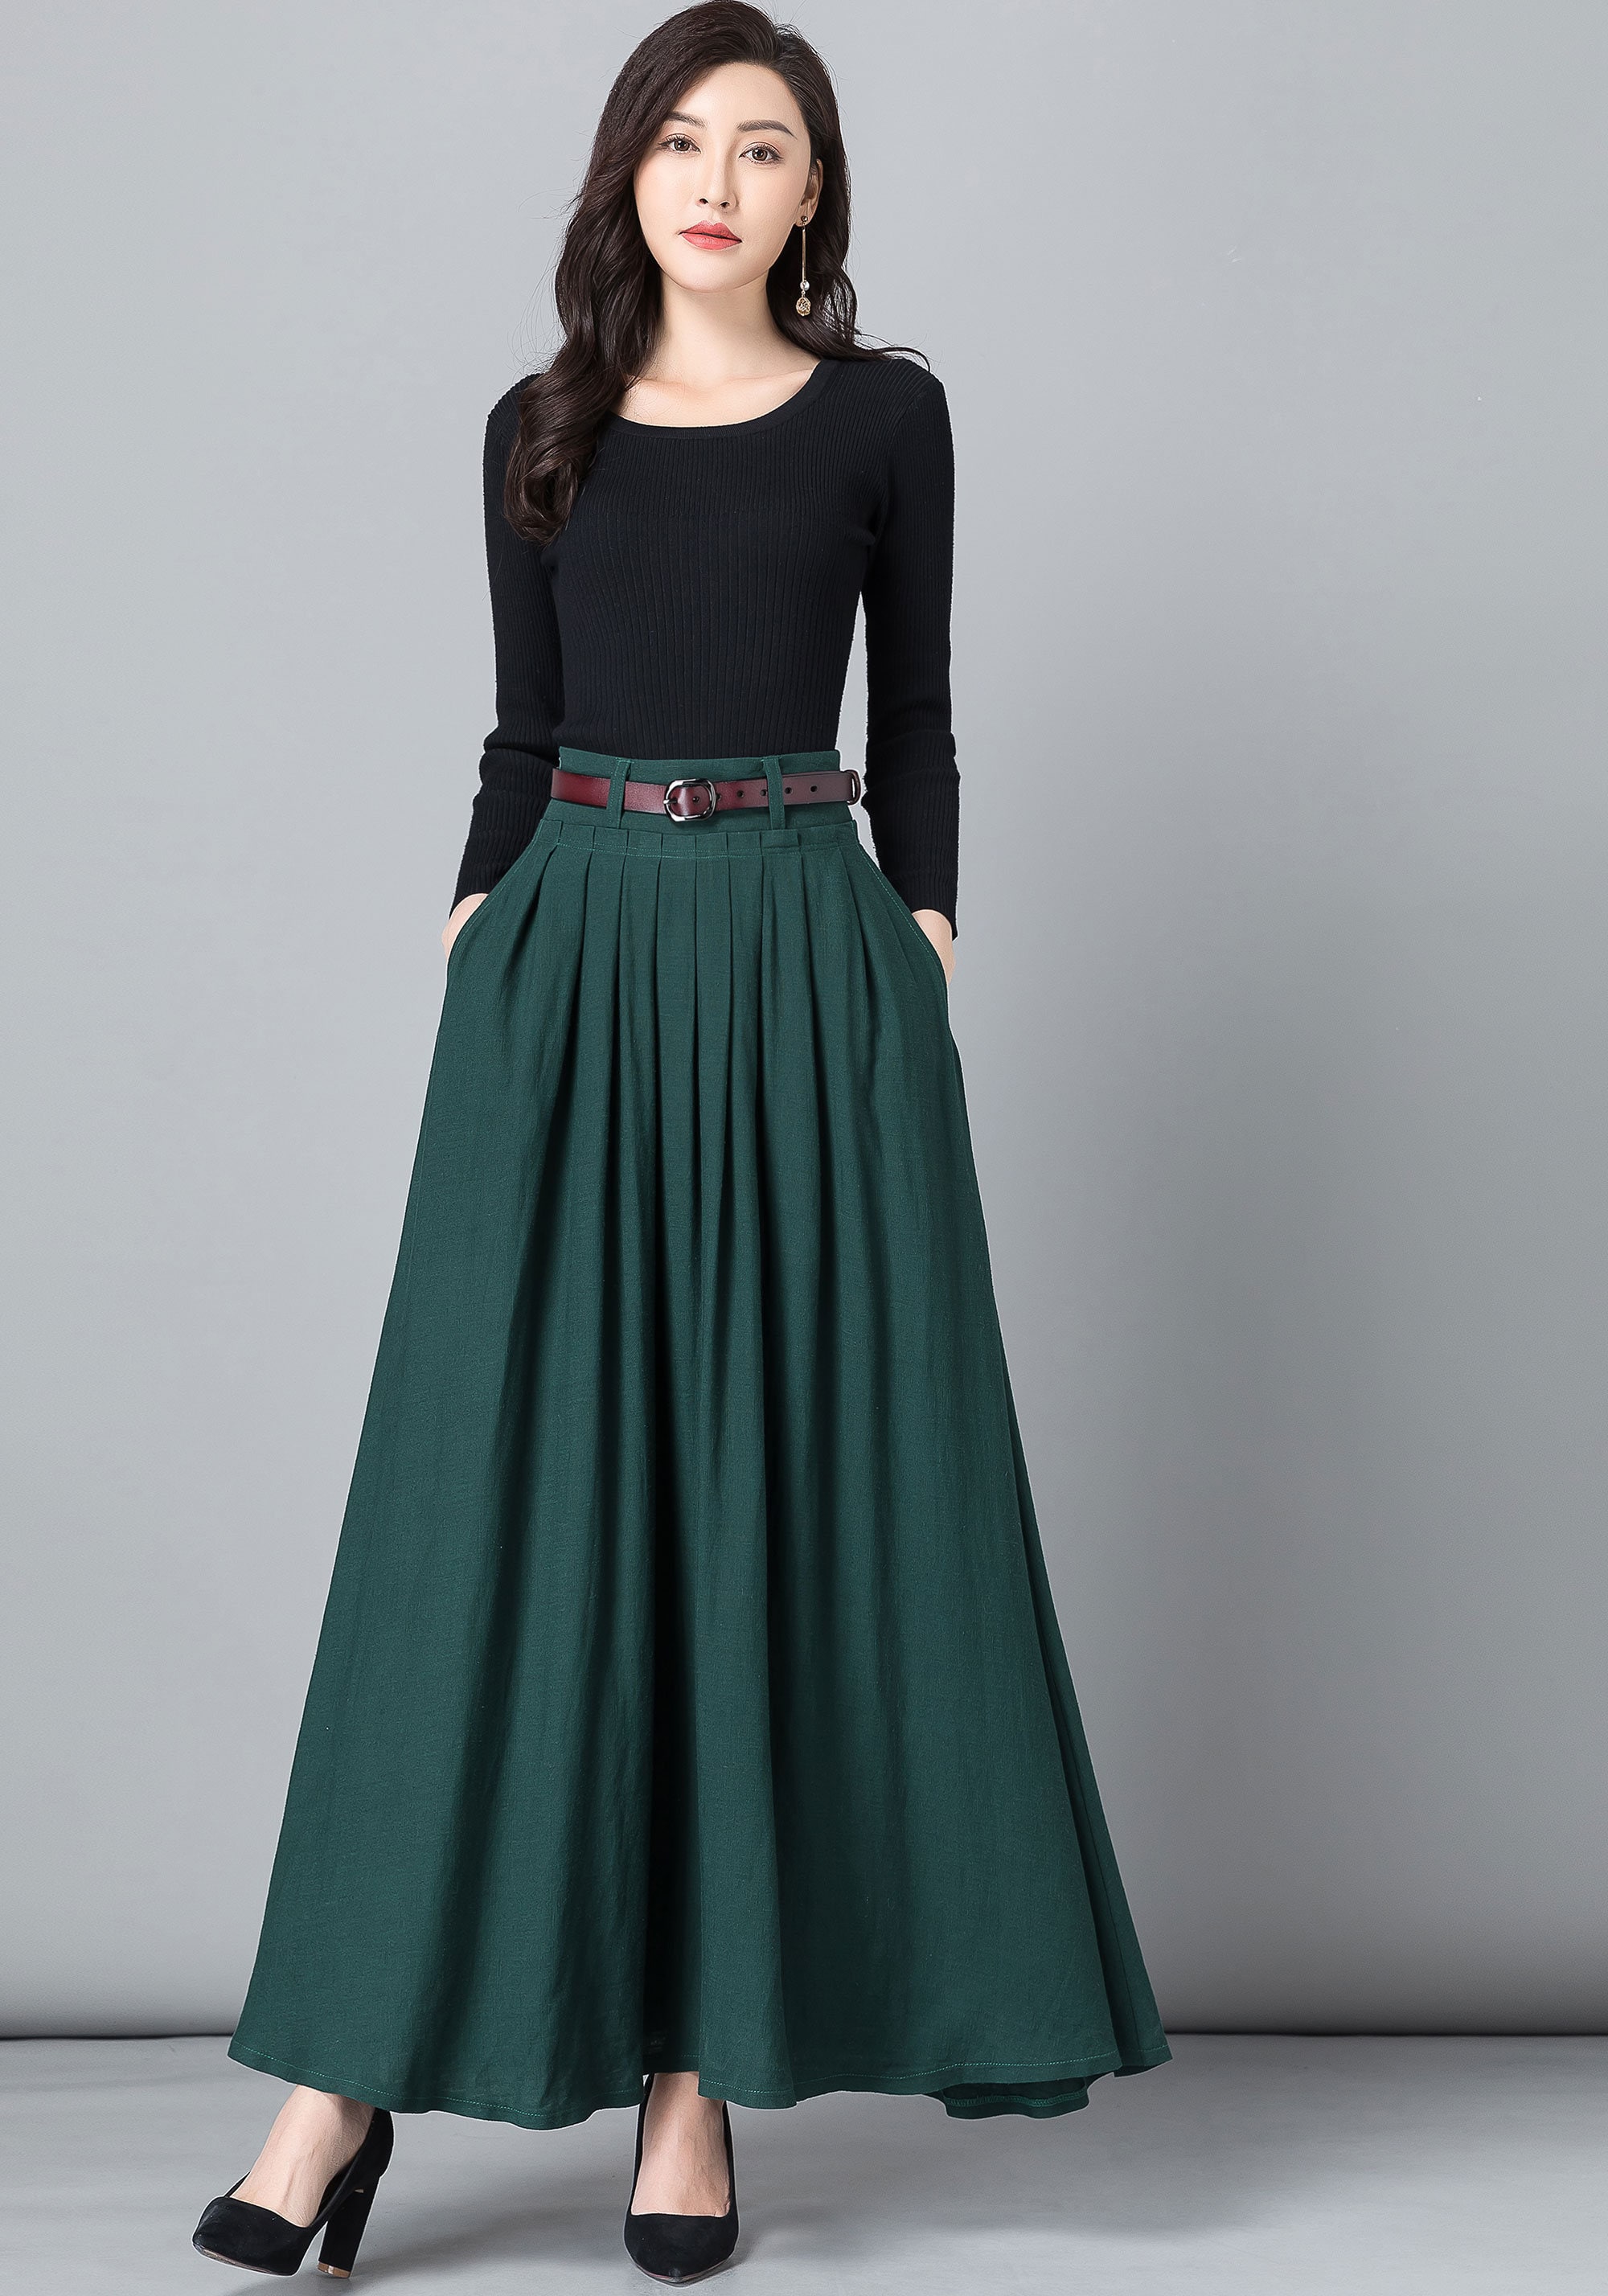 Long Maxi Skirt Work Outfit, Long Linen Skirt, High Waist Long A